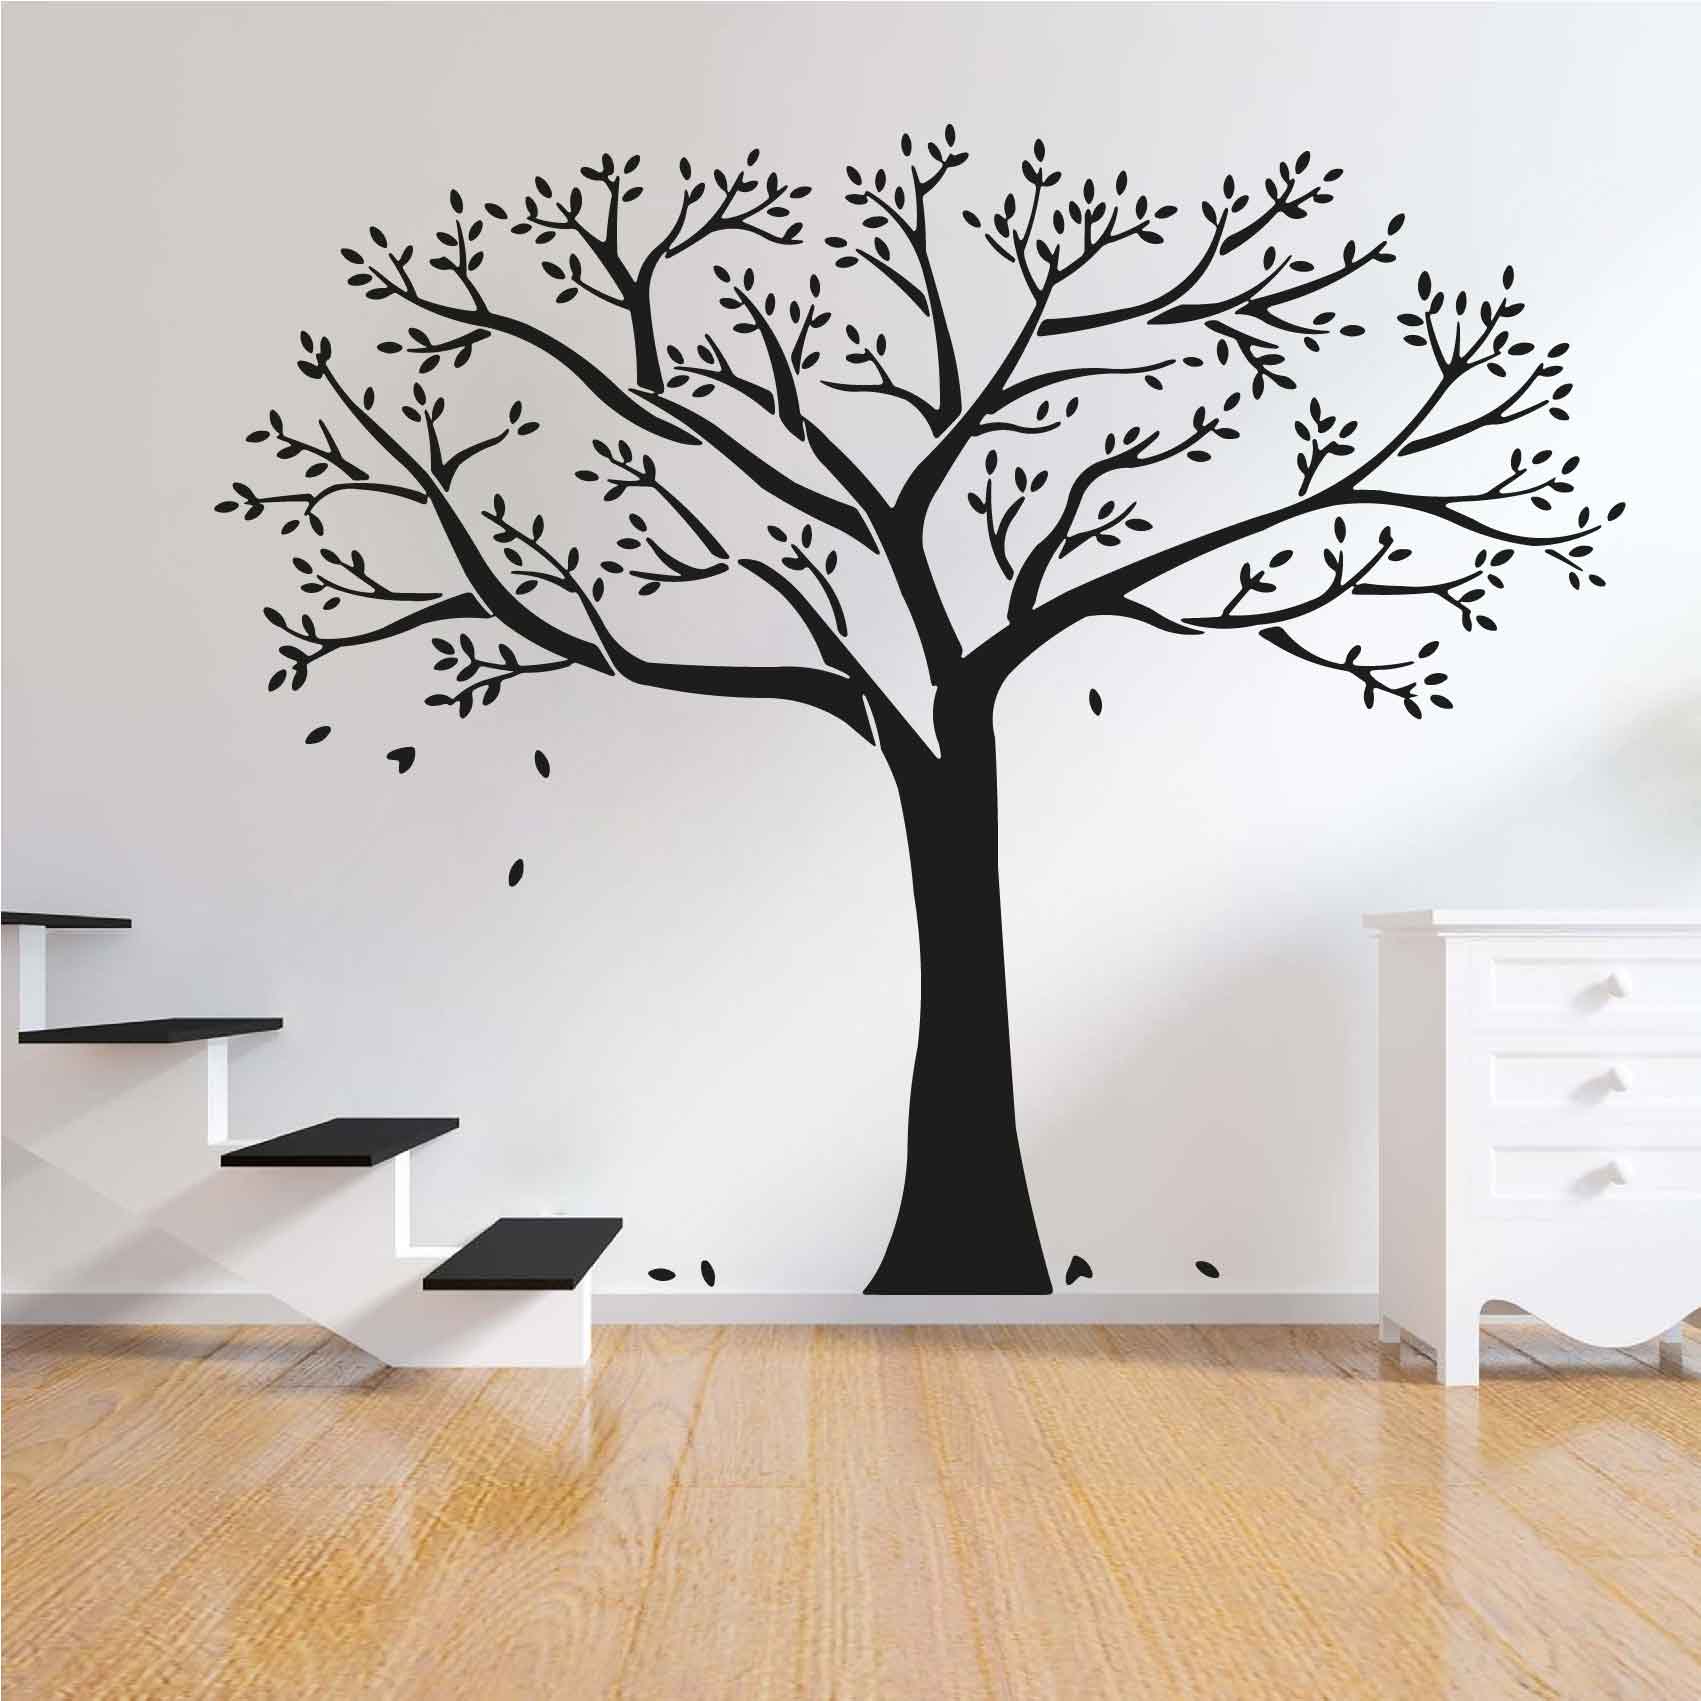 stickers-arbre-geant-ref8arbre-autocollant-muraux-sticker-geant-arbre-deco-branche-noir-rose-gris-vert-blanc-chambre-salon